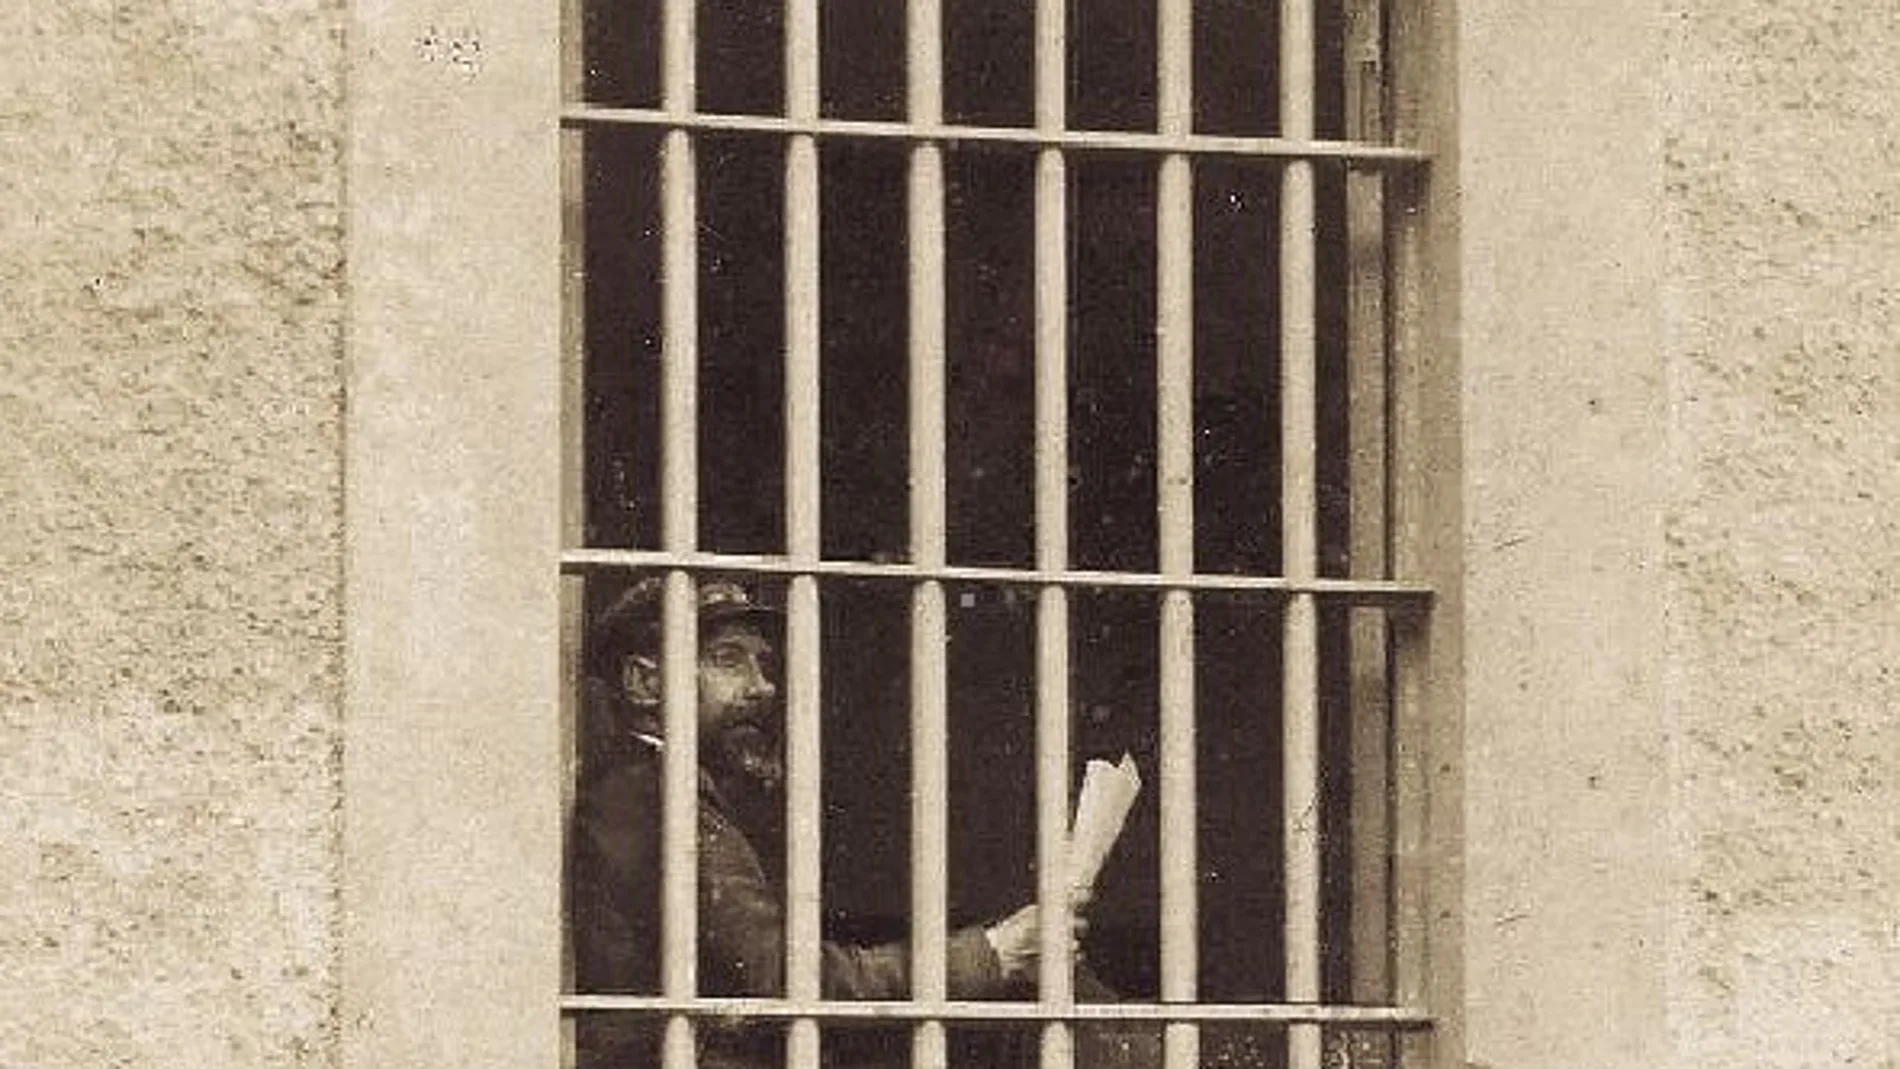 Sabino Arana había nacido en la localidad de Abando, en Vizcaya, a finales del reinado de Isabel II. Fue encarcelado en 1902